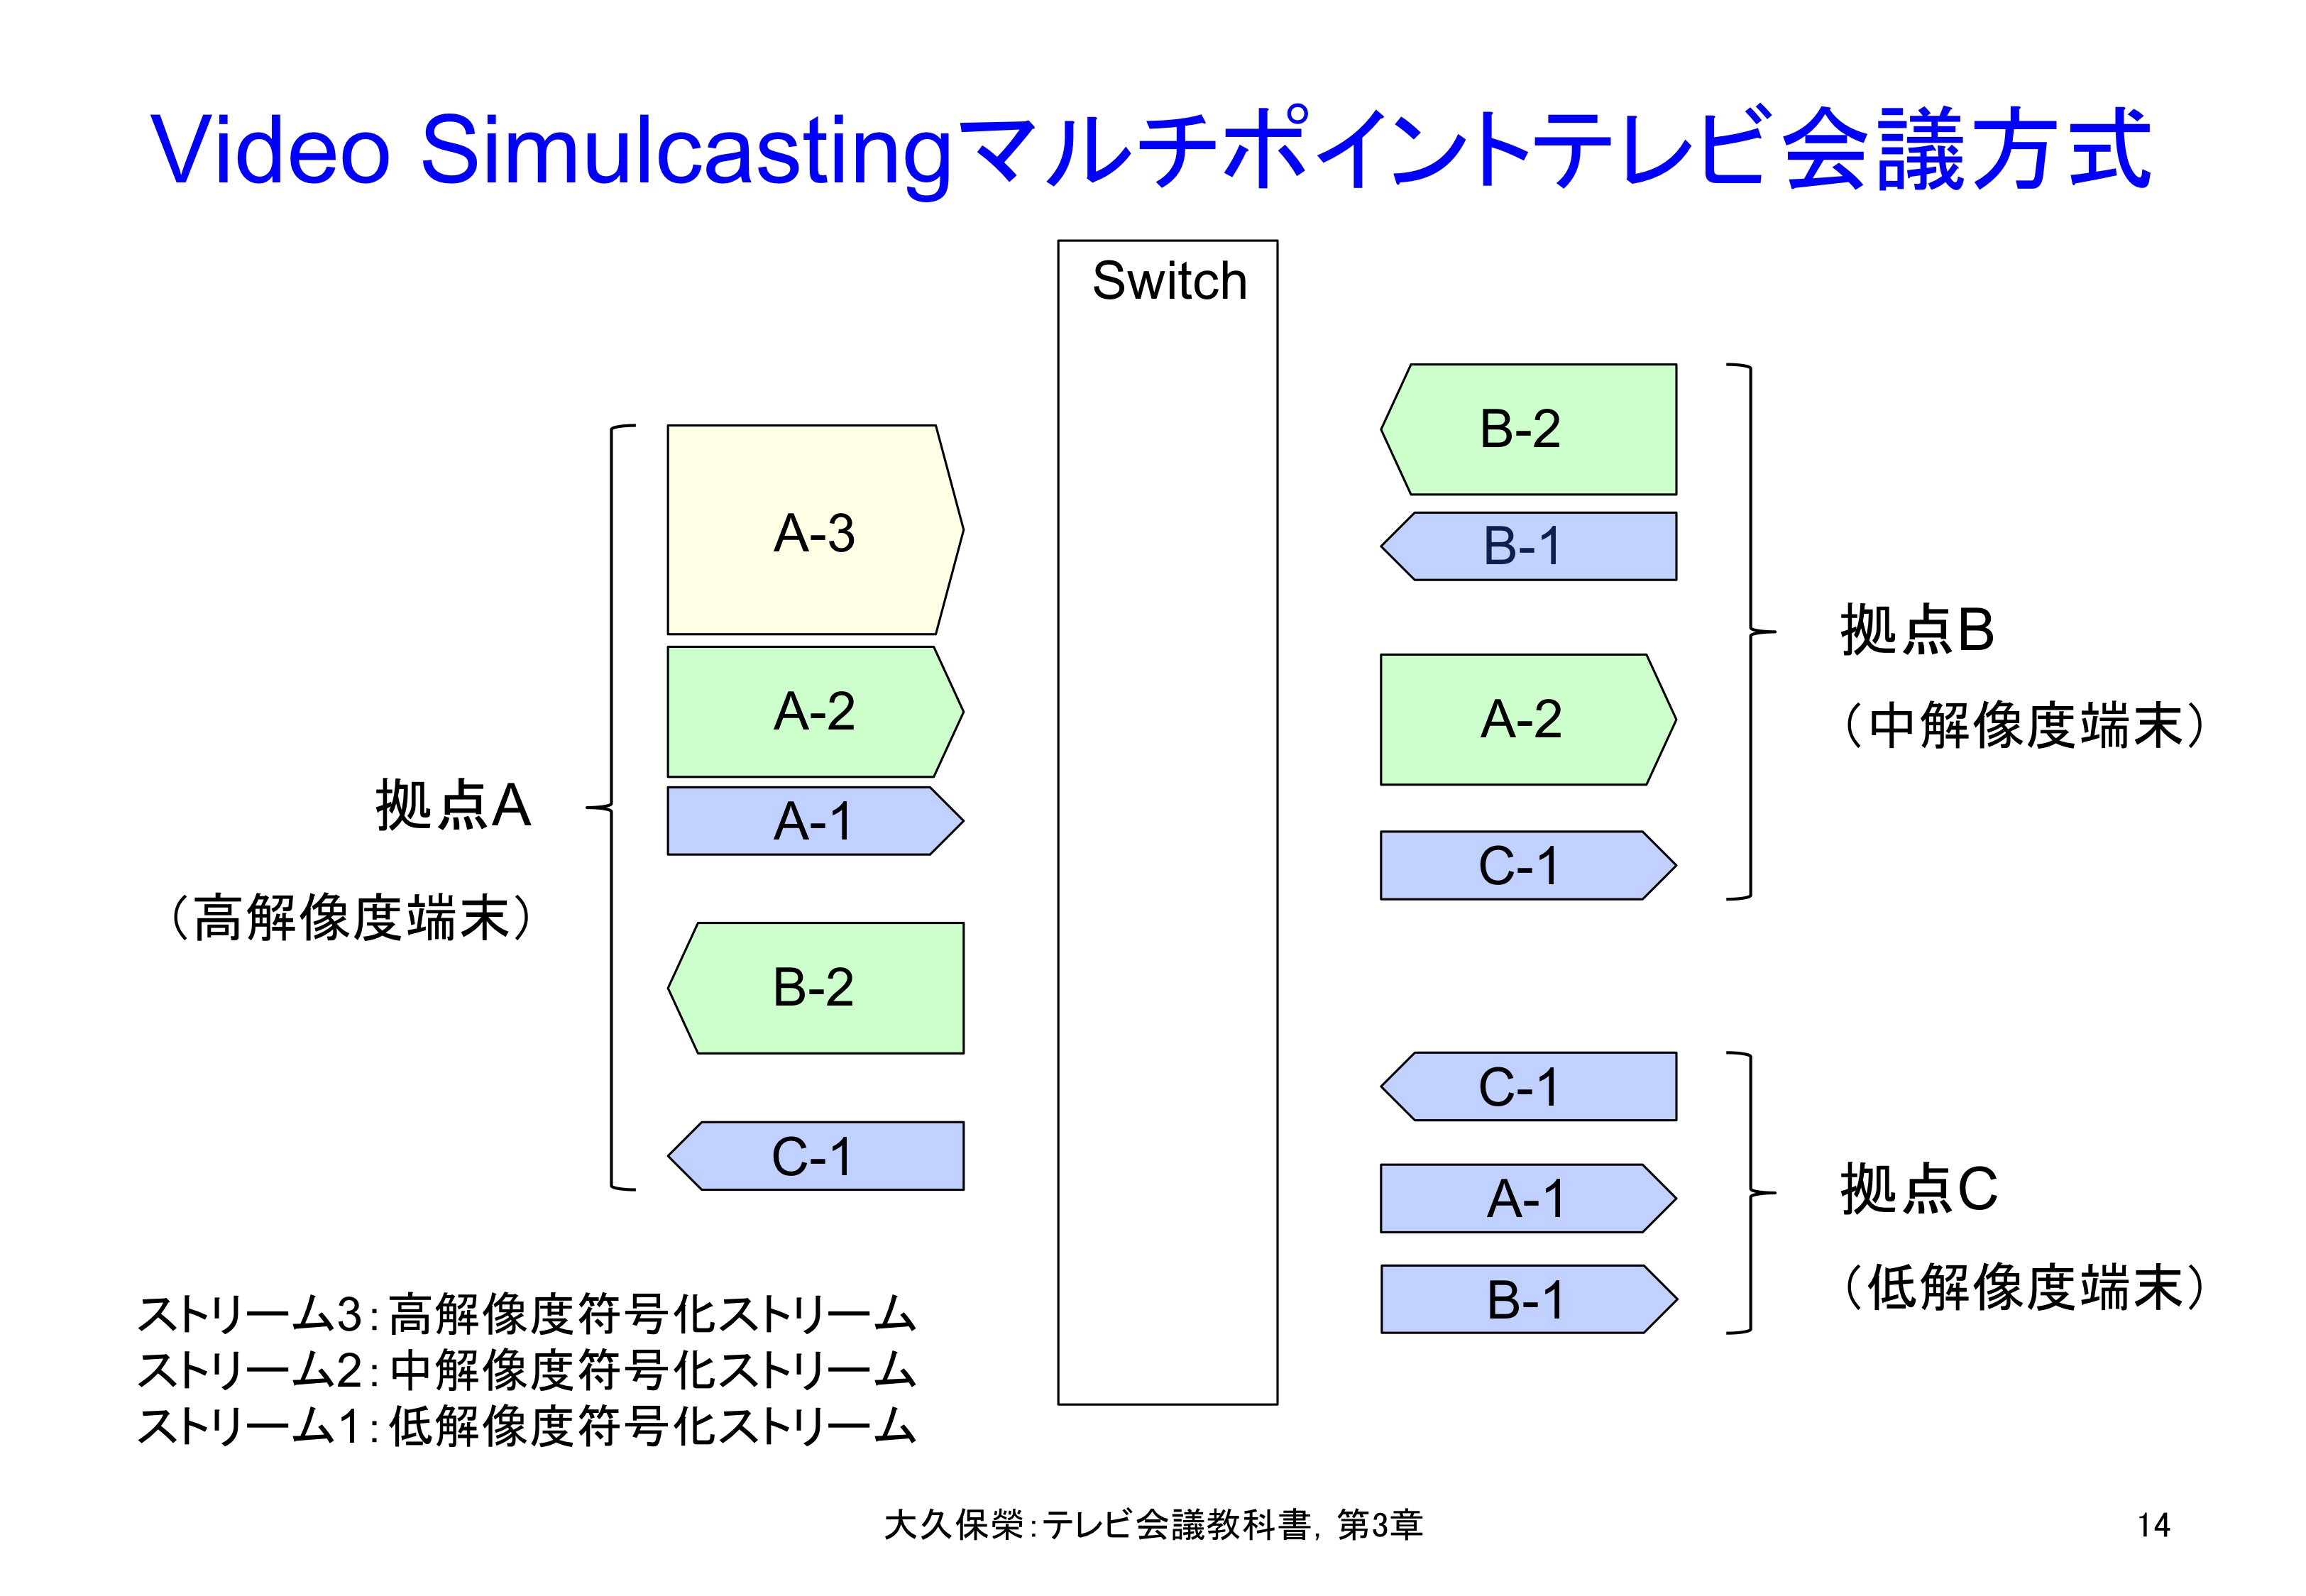 図3-14 Cisco社のVideo Simulcastingマルチポイントテレビ会議システム